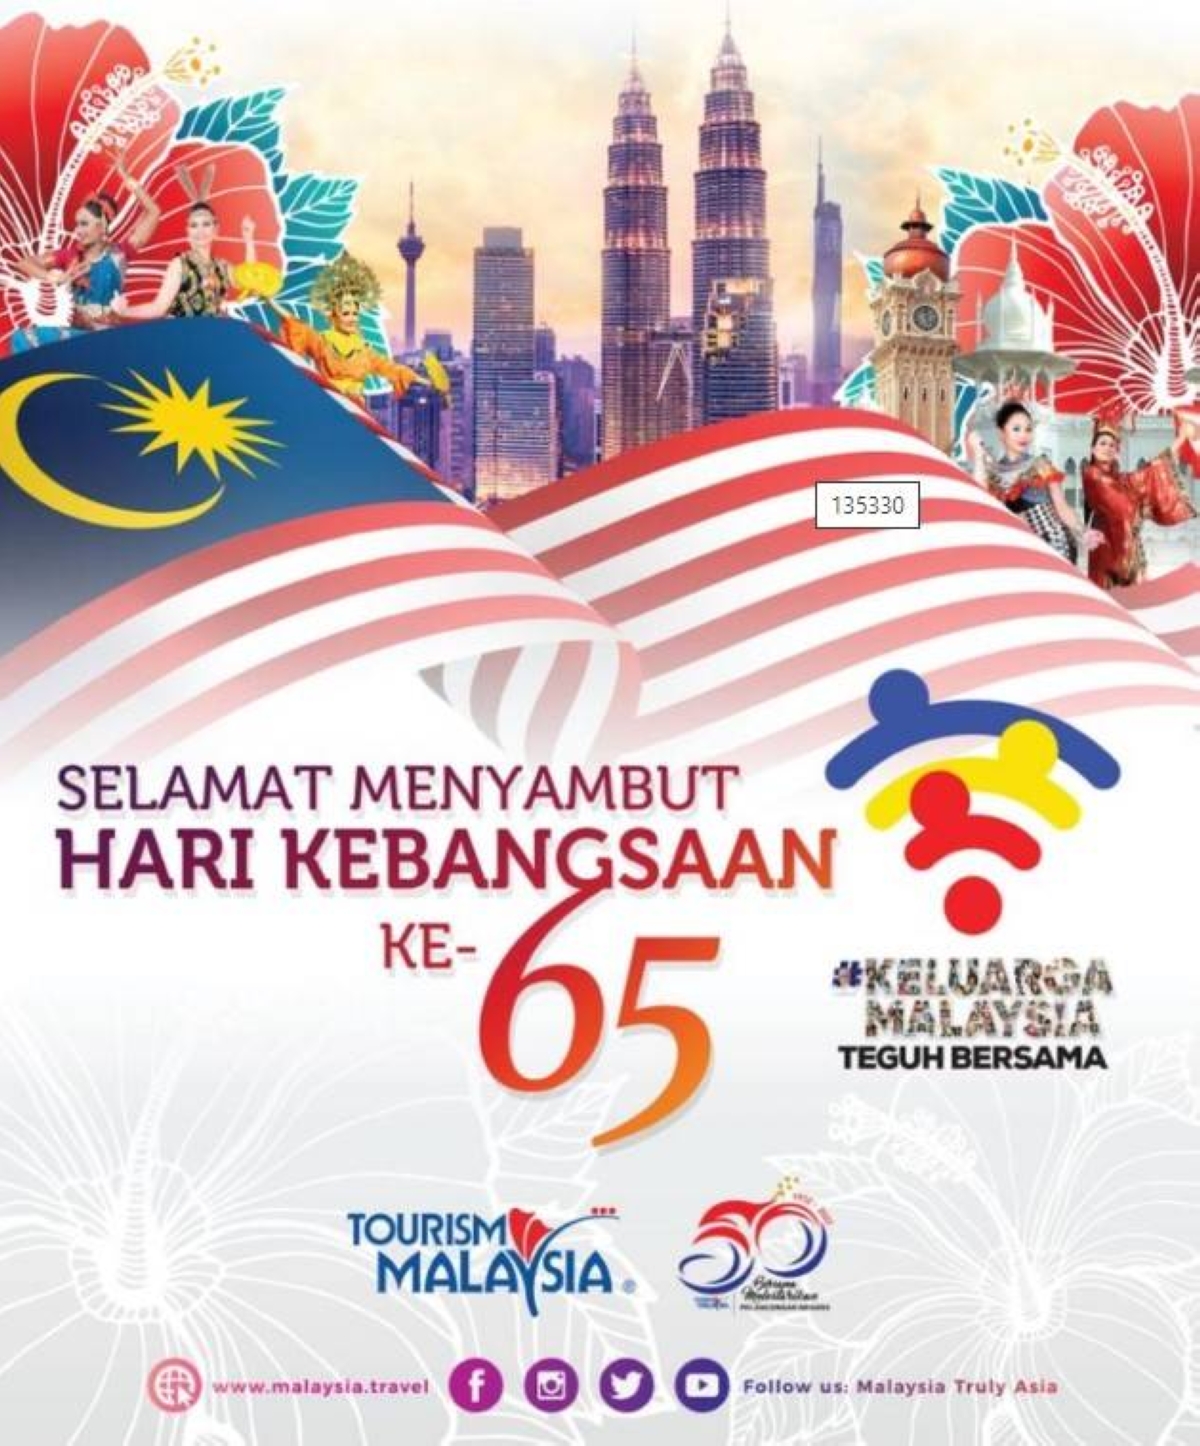 2022 年马尼拉欢乐马来西亚周 – 马尼拉时报